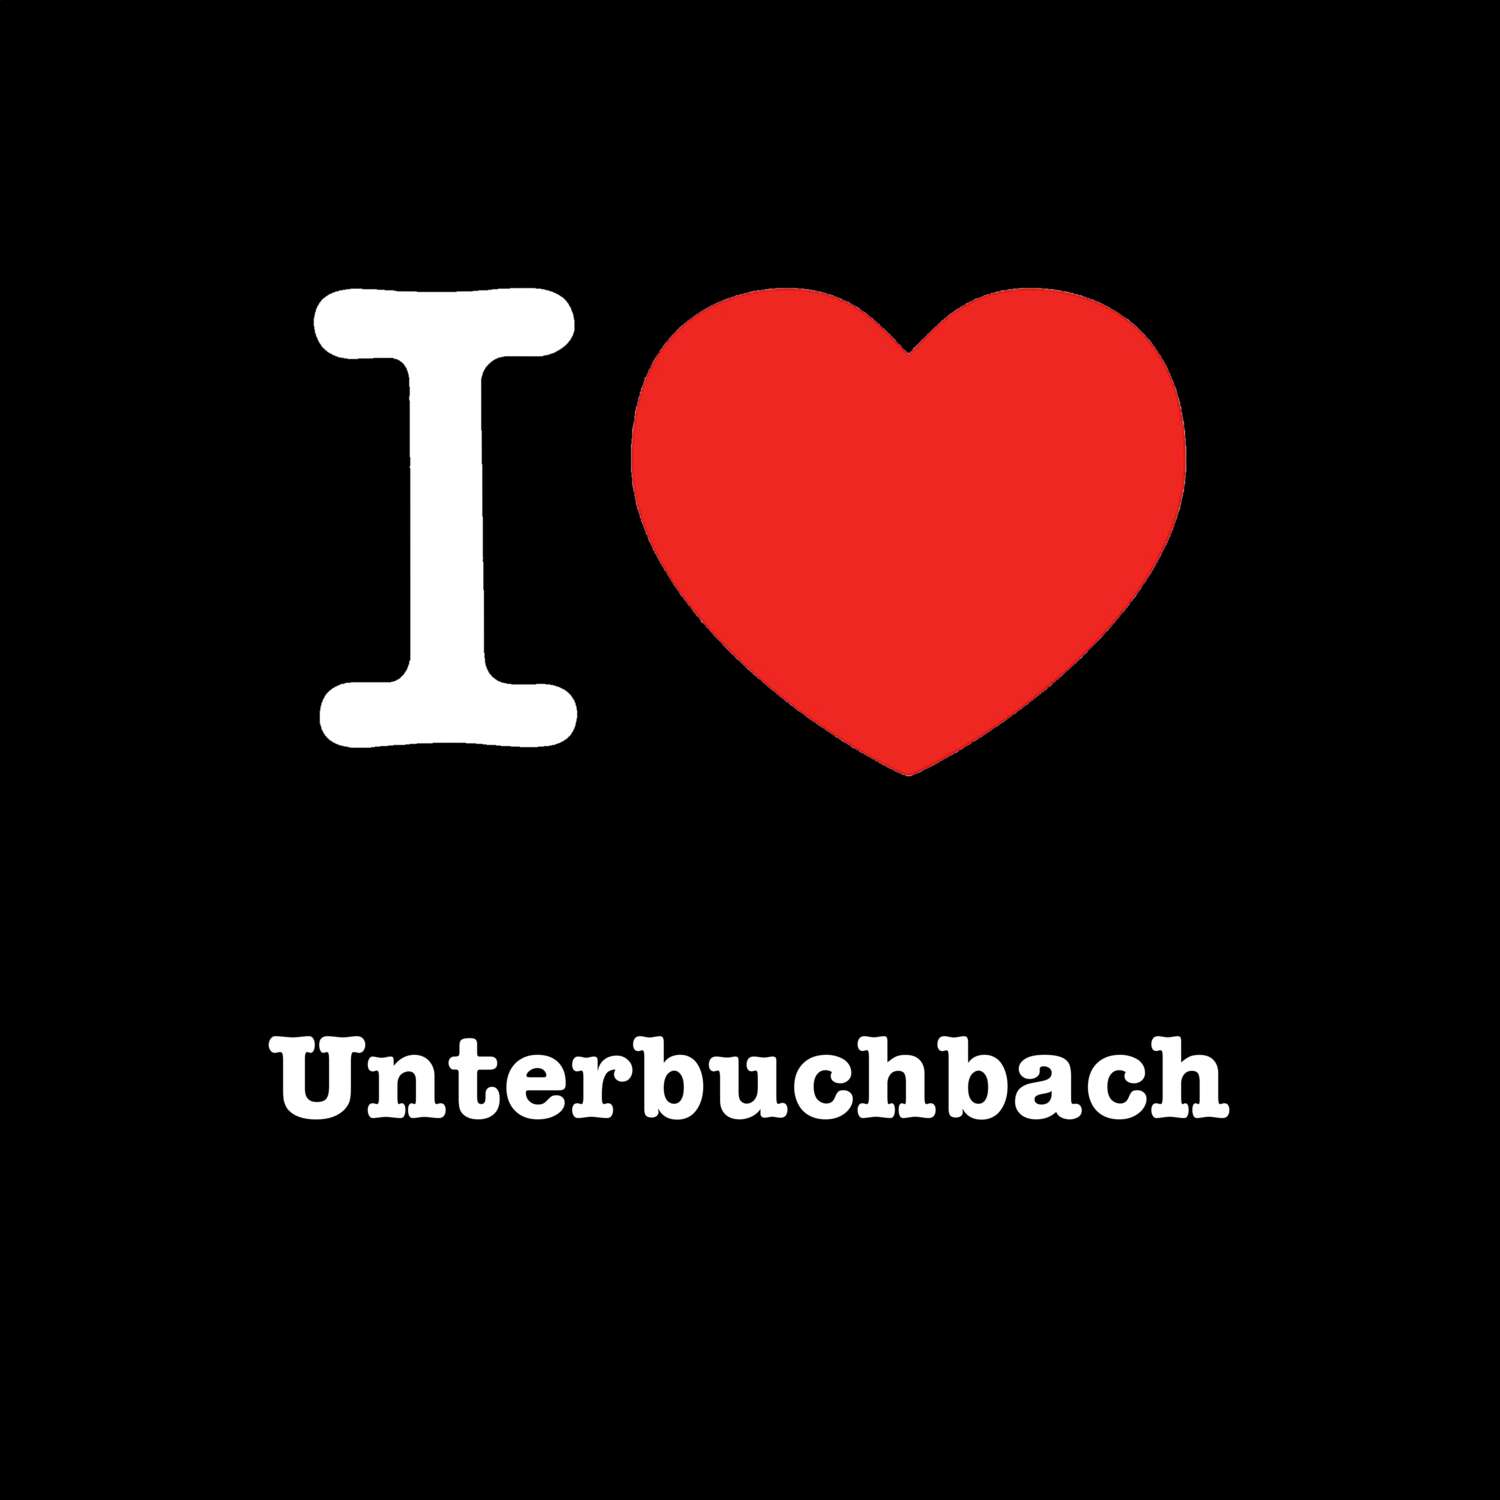 Unterbuchbach T-Shirt »I love«